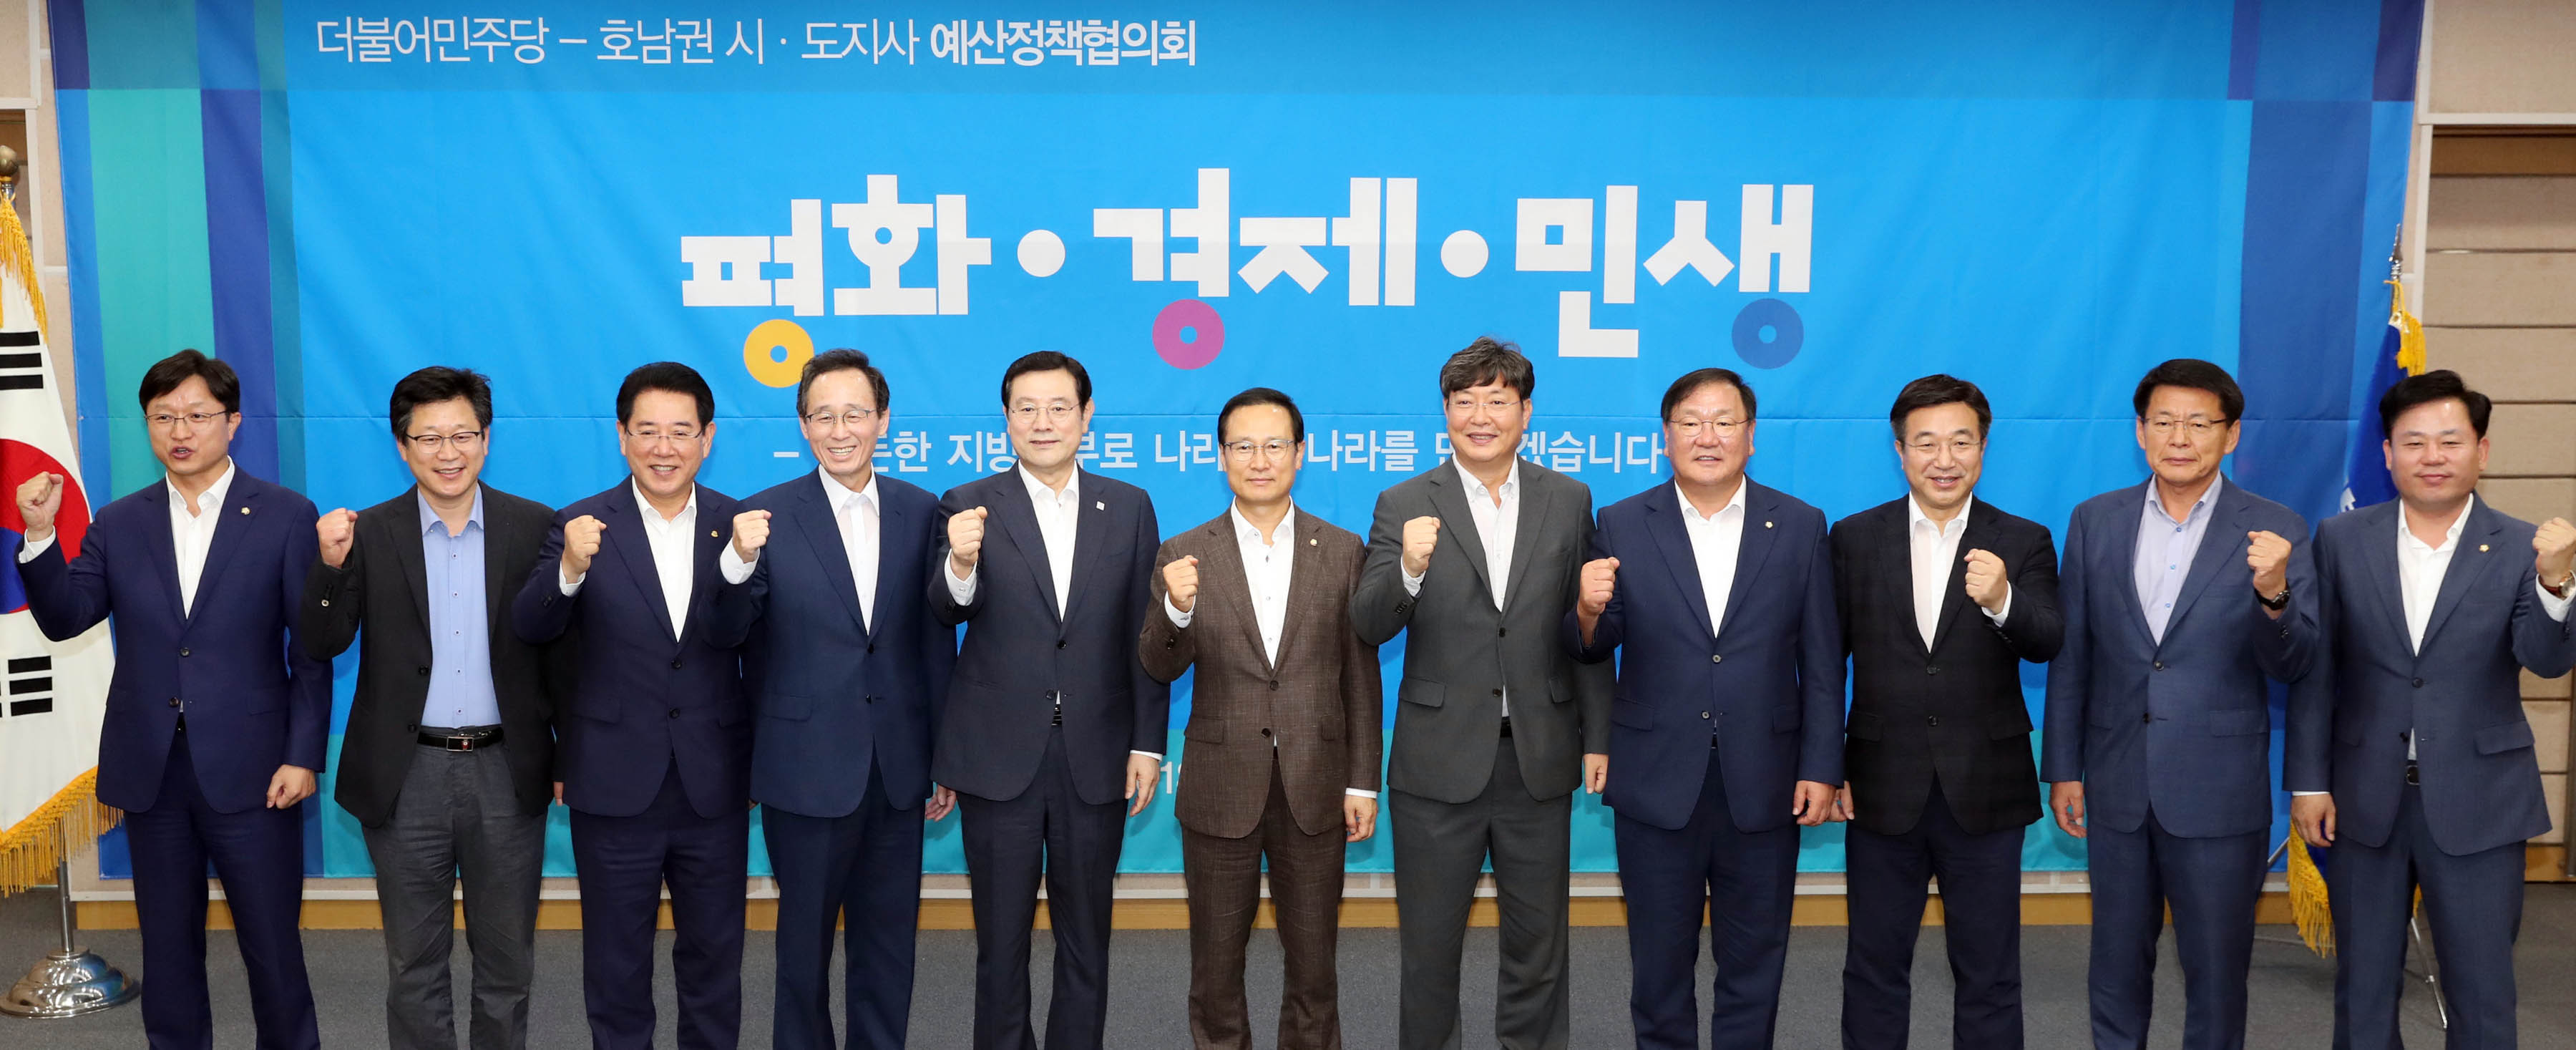 더불어민주당-호남권(전남ㆍ광주ㆍ전북) 시ㆍ도지사 예산정책협의회1